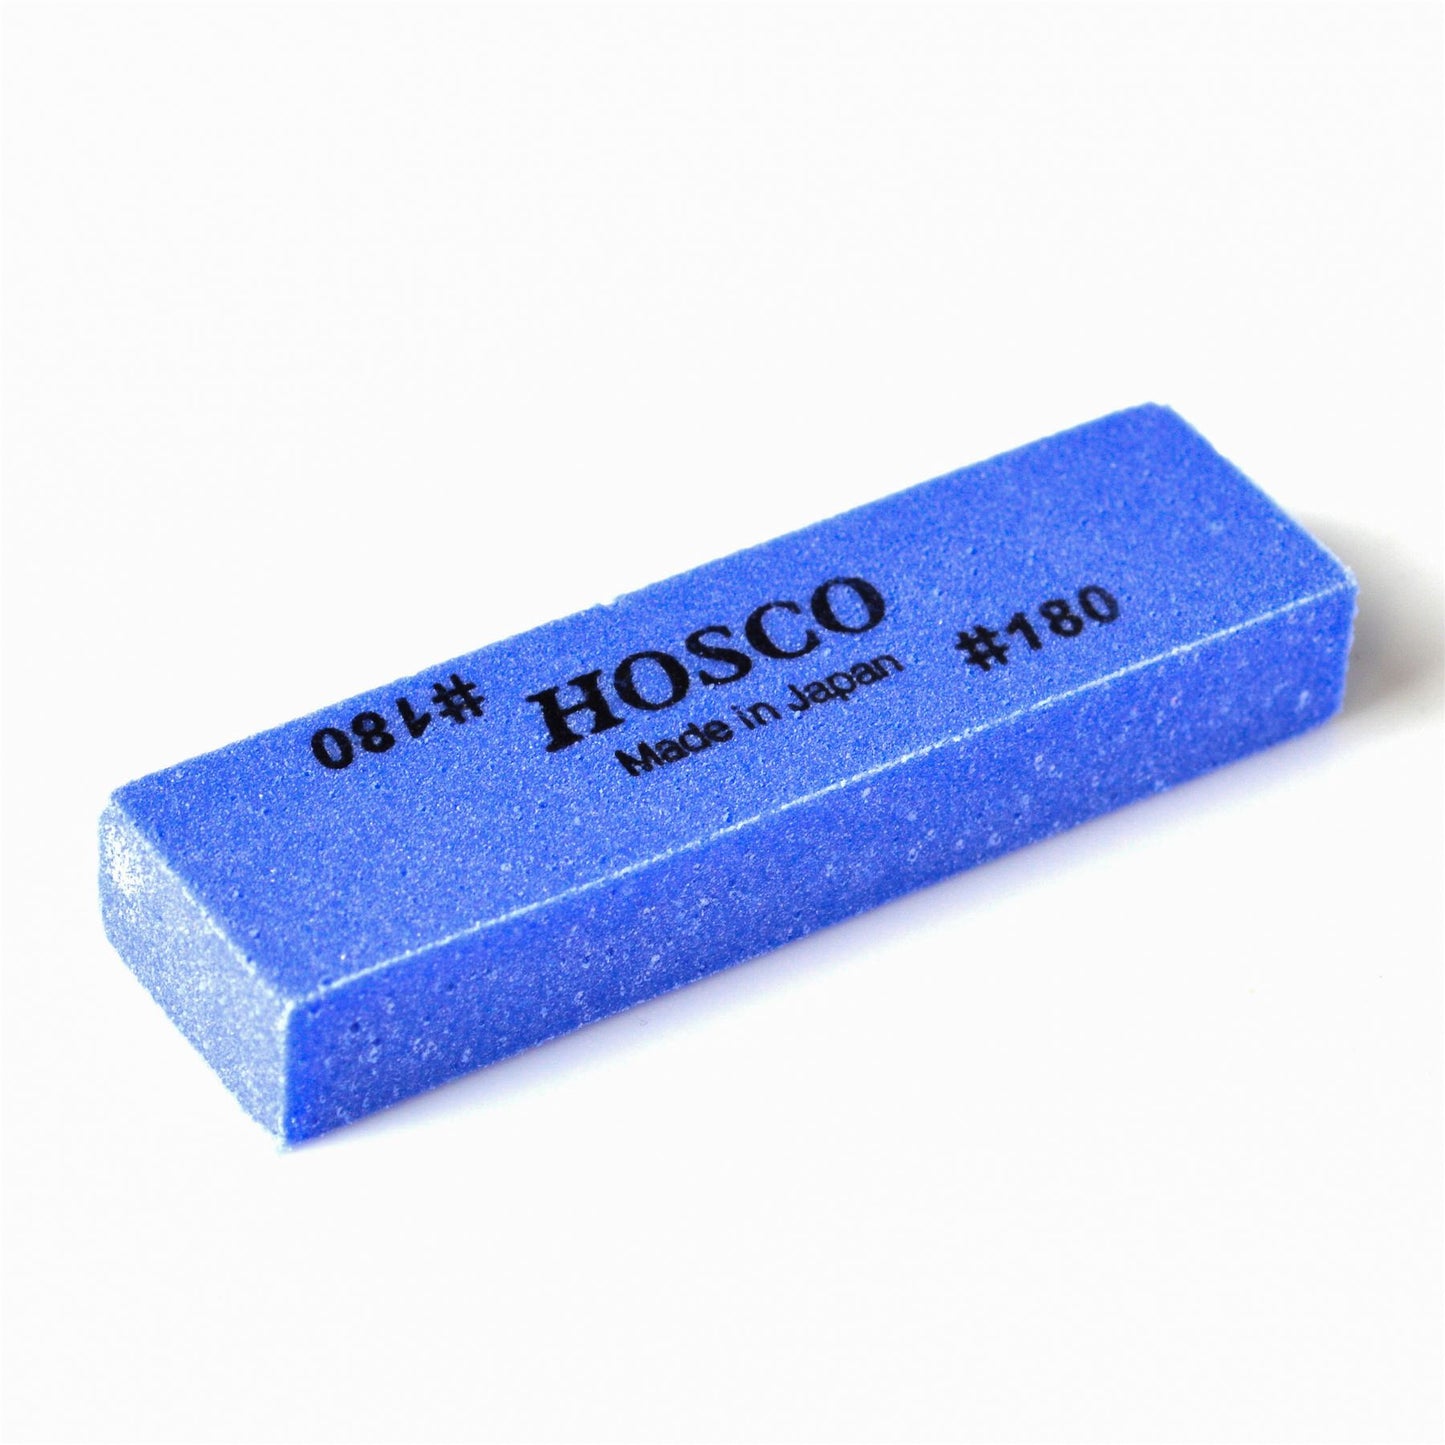 Hosco Fret Polishing Rubber - 180 Grit